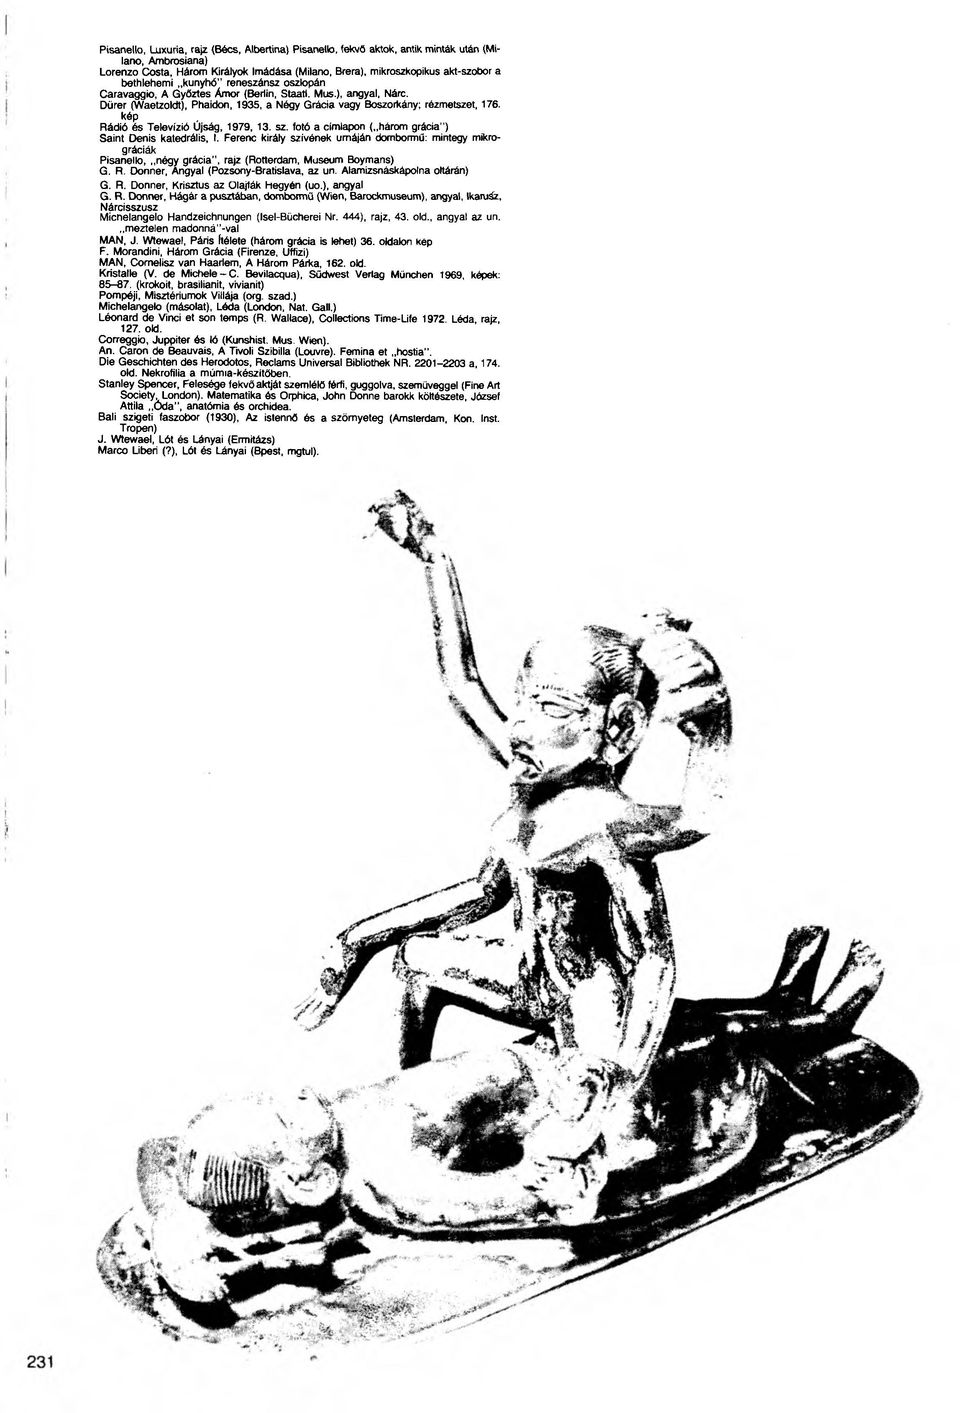 kép Rádió és Televízió Újság, 1979, 13. sz. fotó a címlapon ( három grácia") Saint Denis katedrális, I.